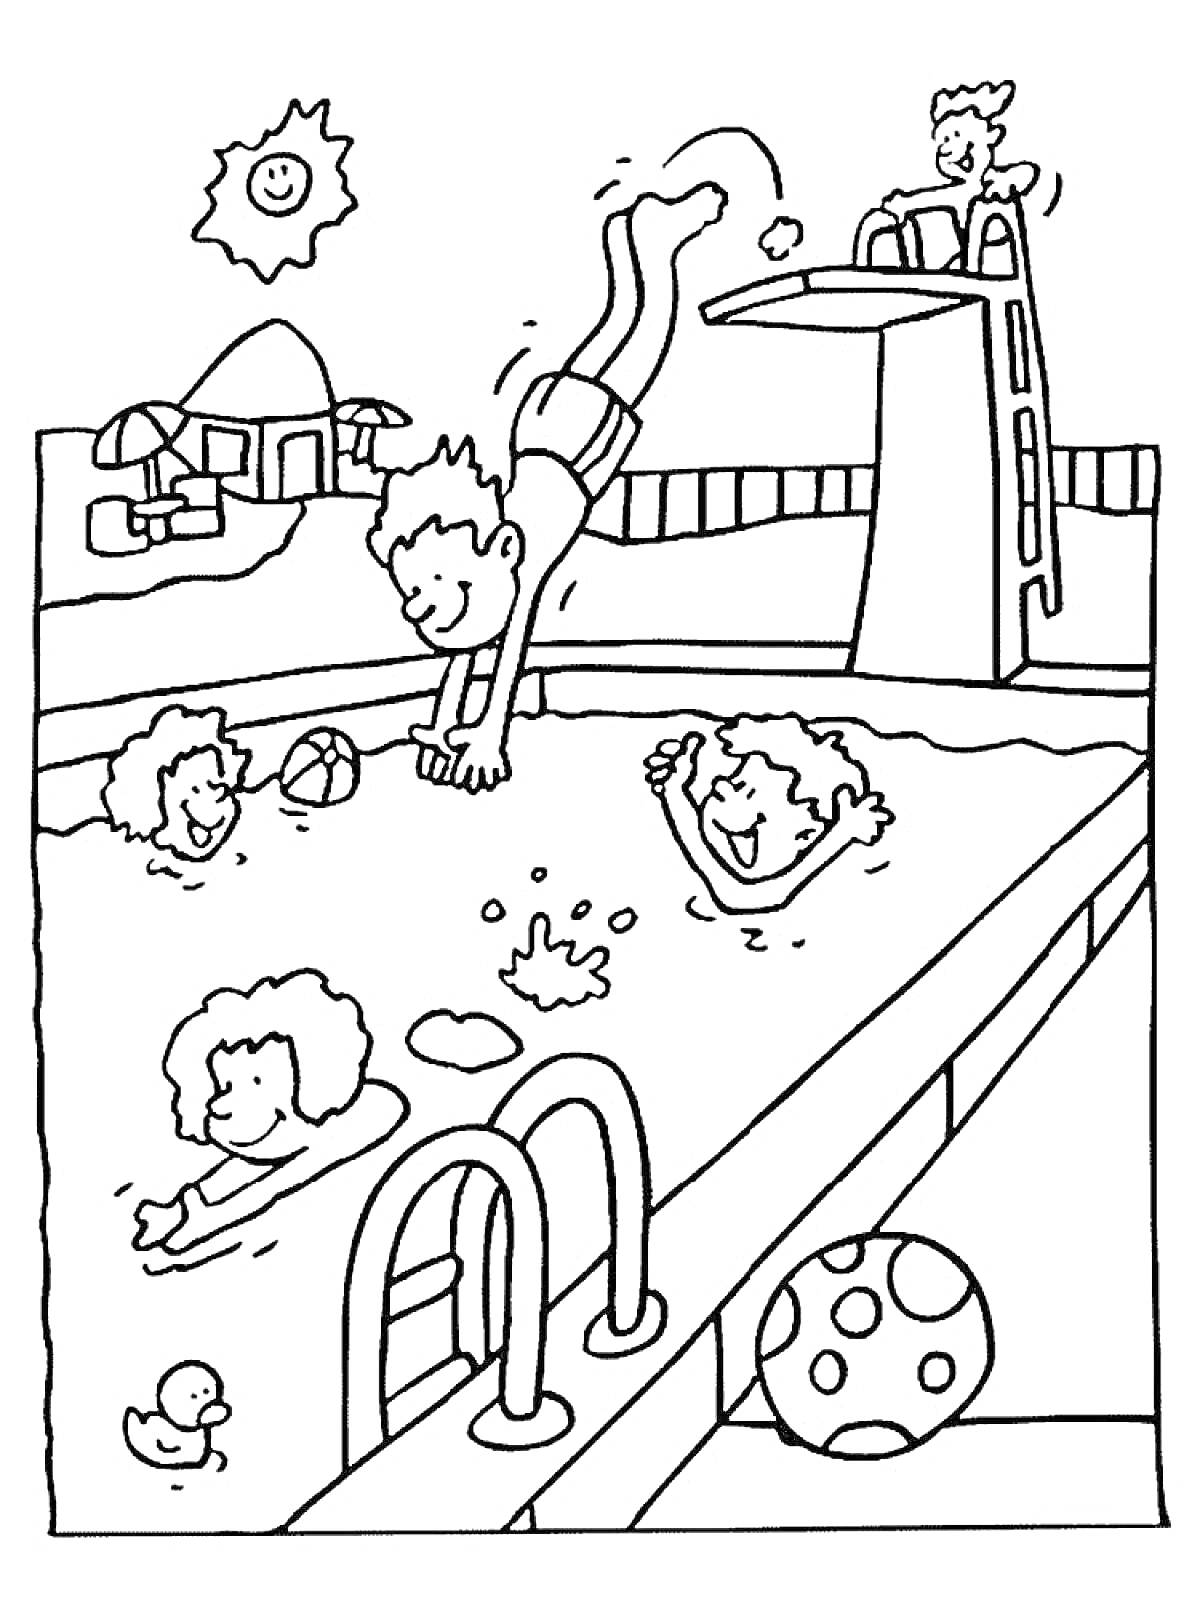 Раскраска Дети плавают и прыгают в бассейн аквапарка, водная горка, солнце, улыбающийся шар, утка